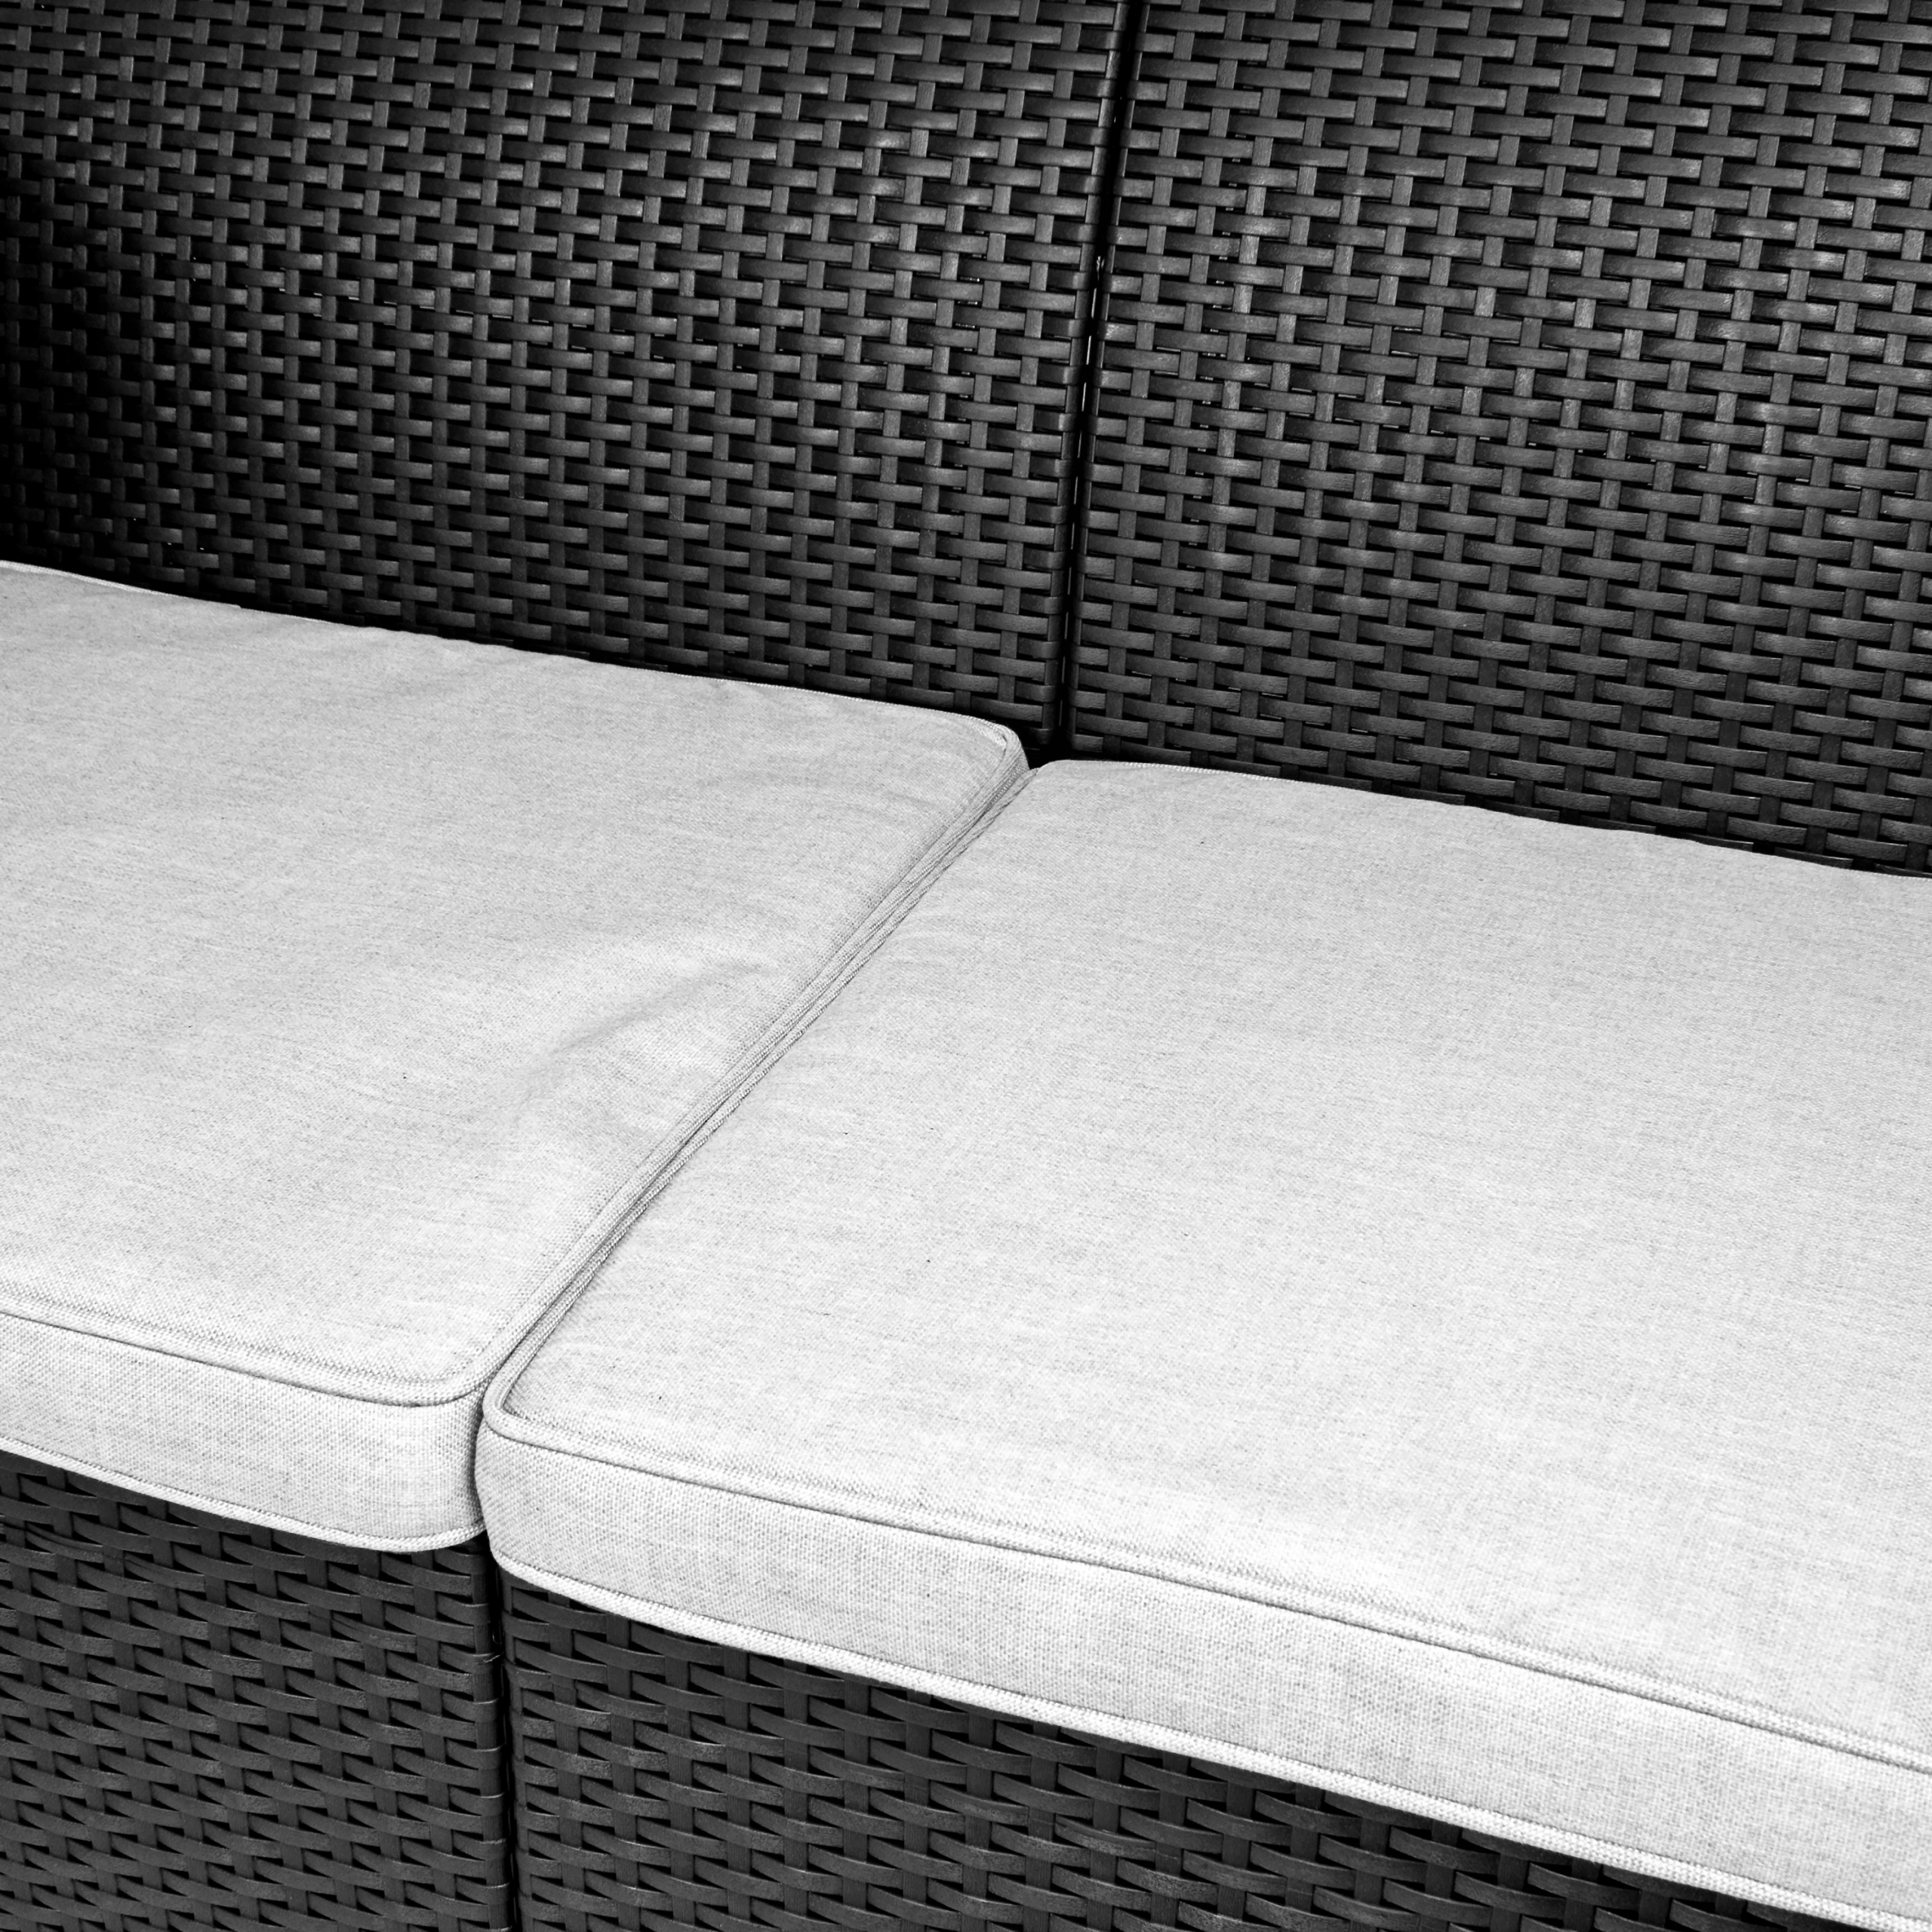 Zestaw mebli ogrodowych Sapphire ST-1550 Venice - stolik + sofa + 2 fotele